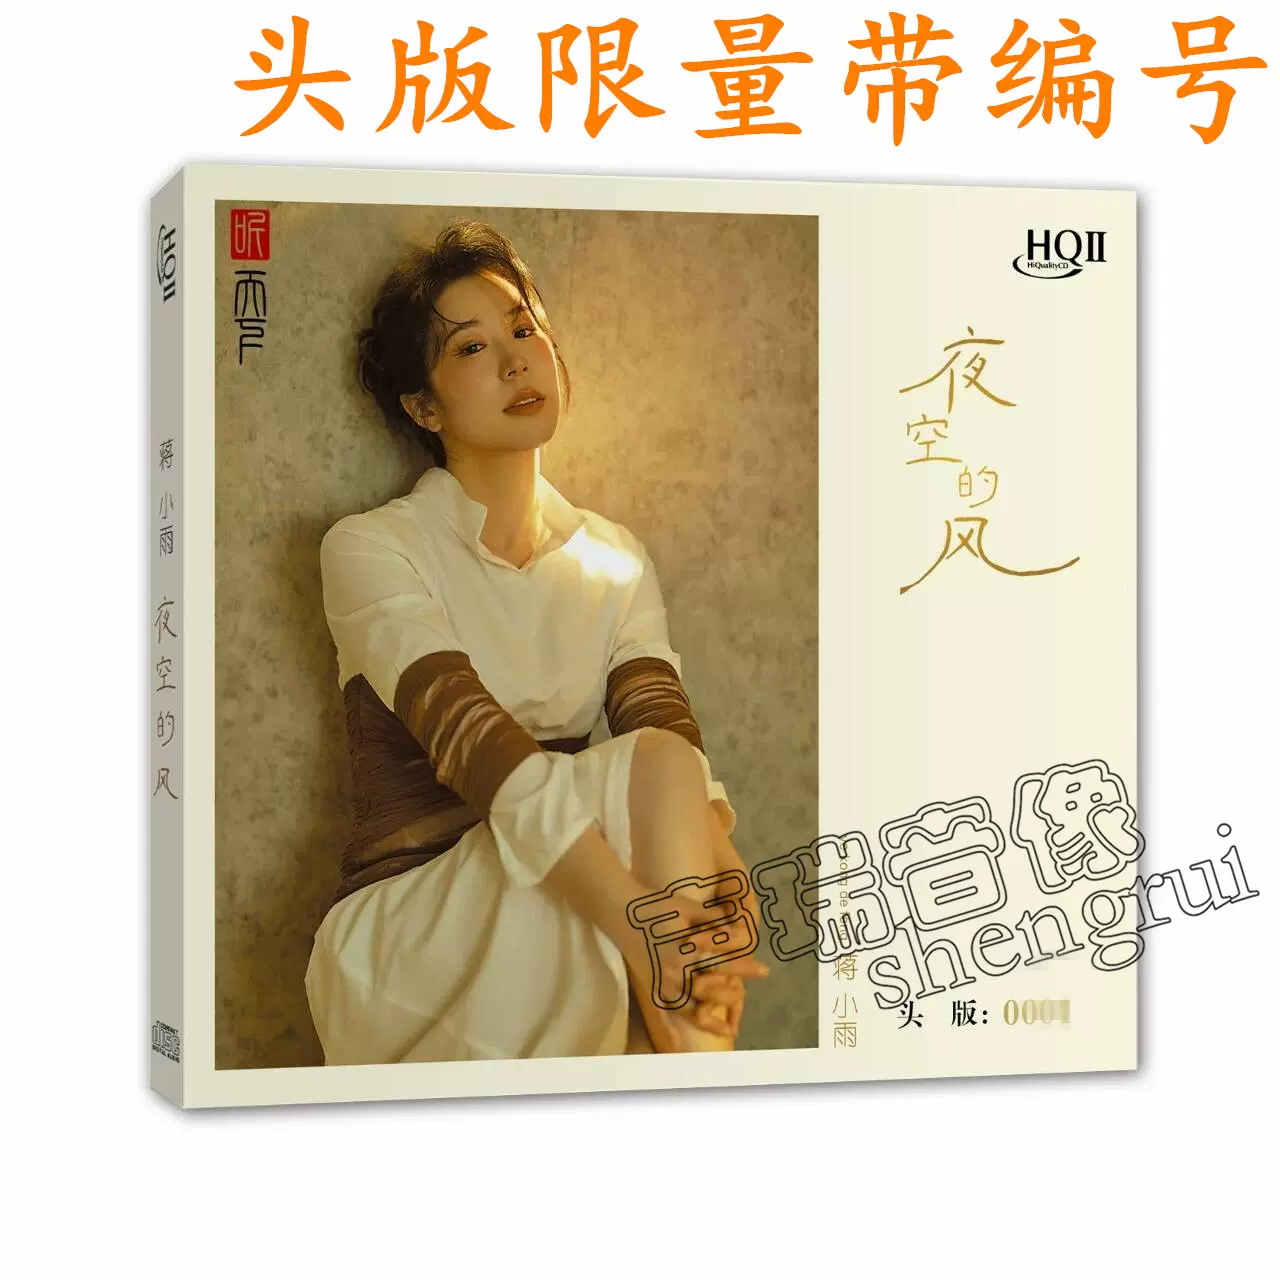 头版限量港乐之旅繁花HQ2CD HQIICD致敬经典时代群星经典合辑CD-Taobao 